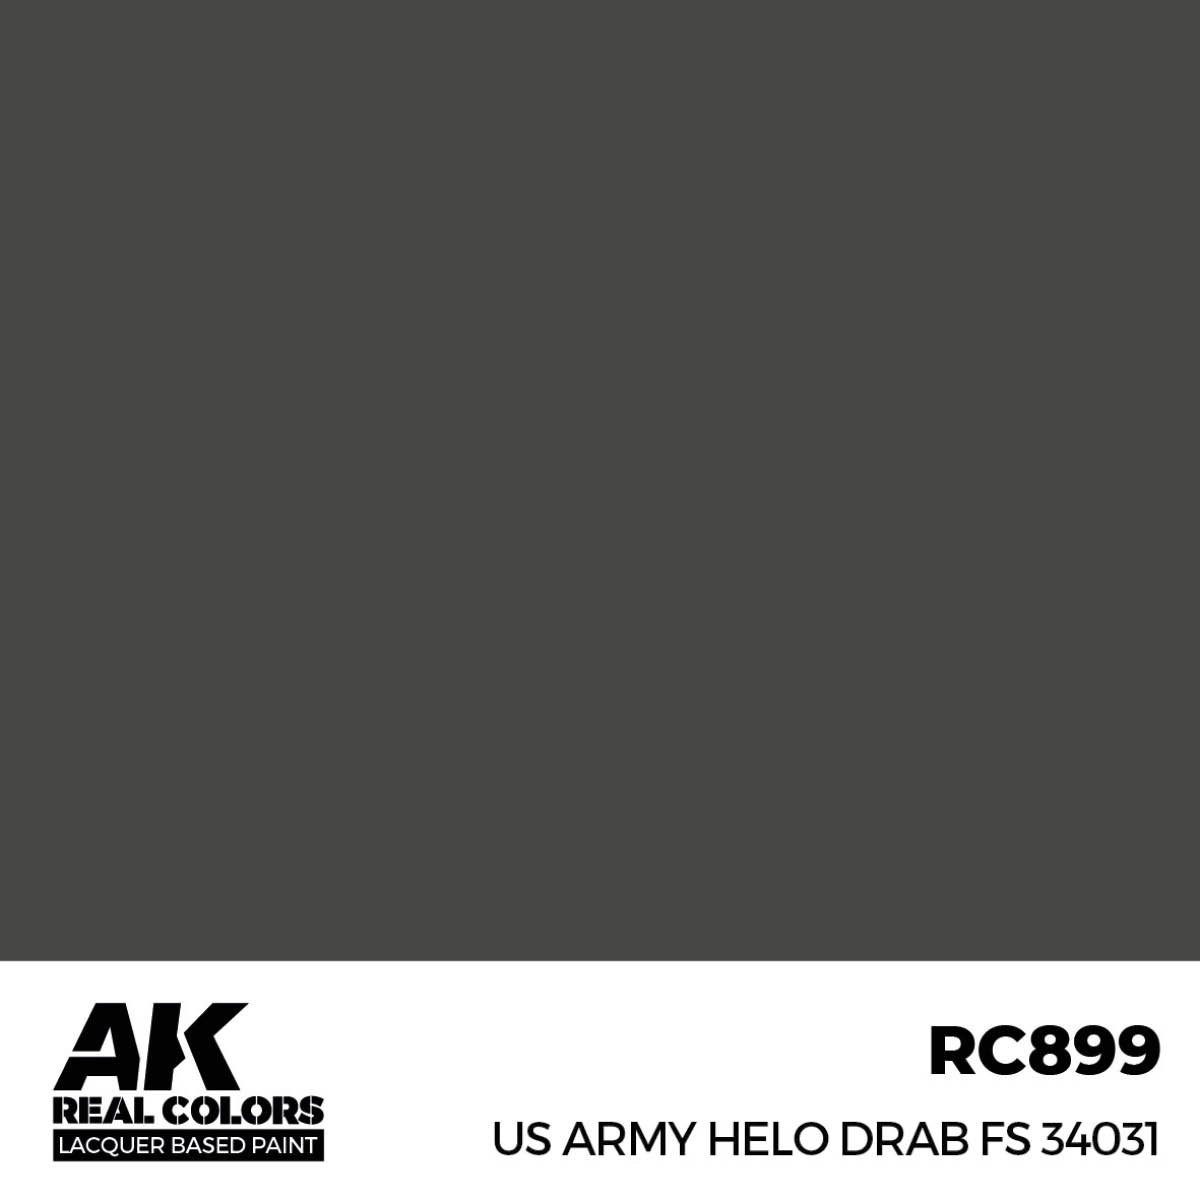 US Army Helo Drab FS 34031